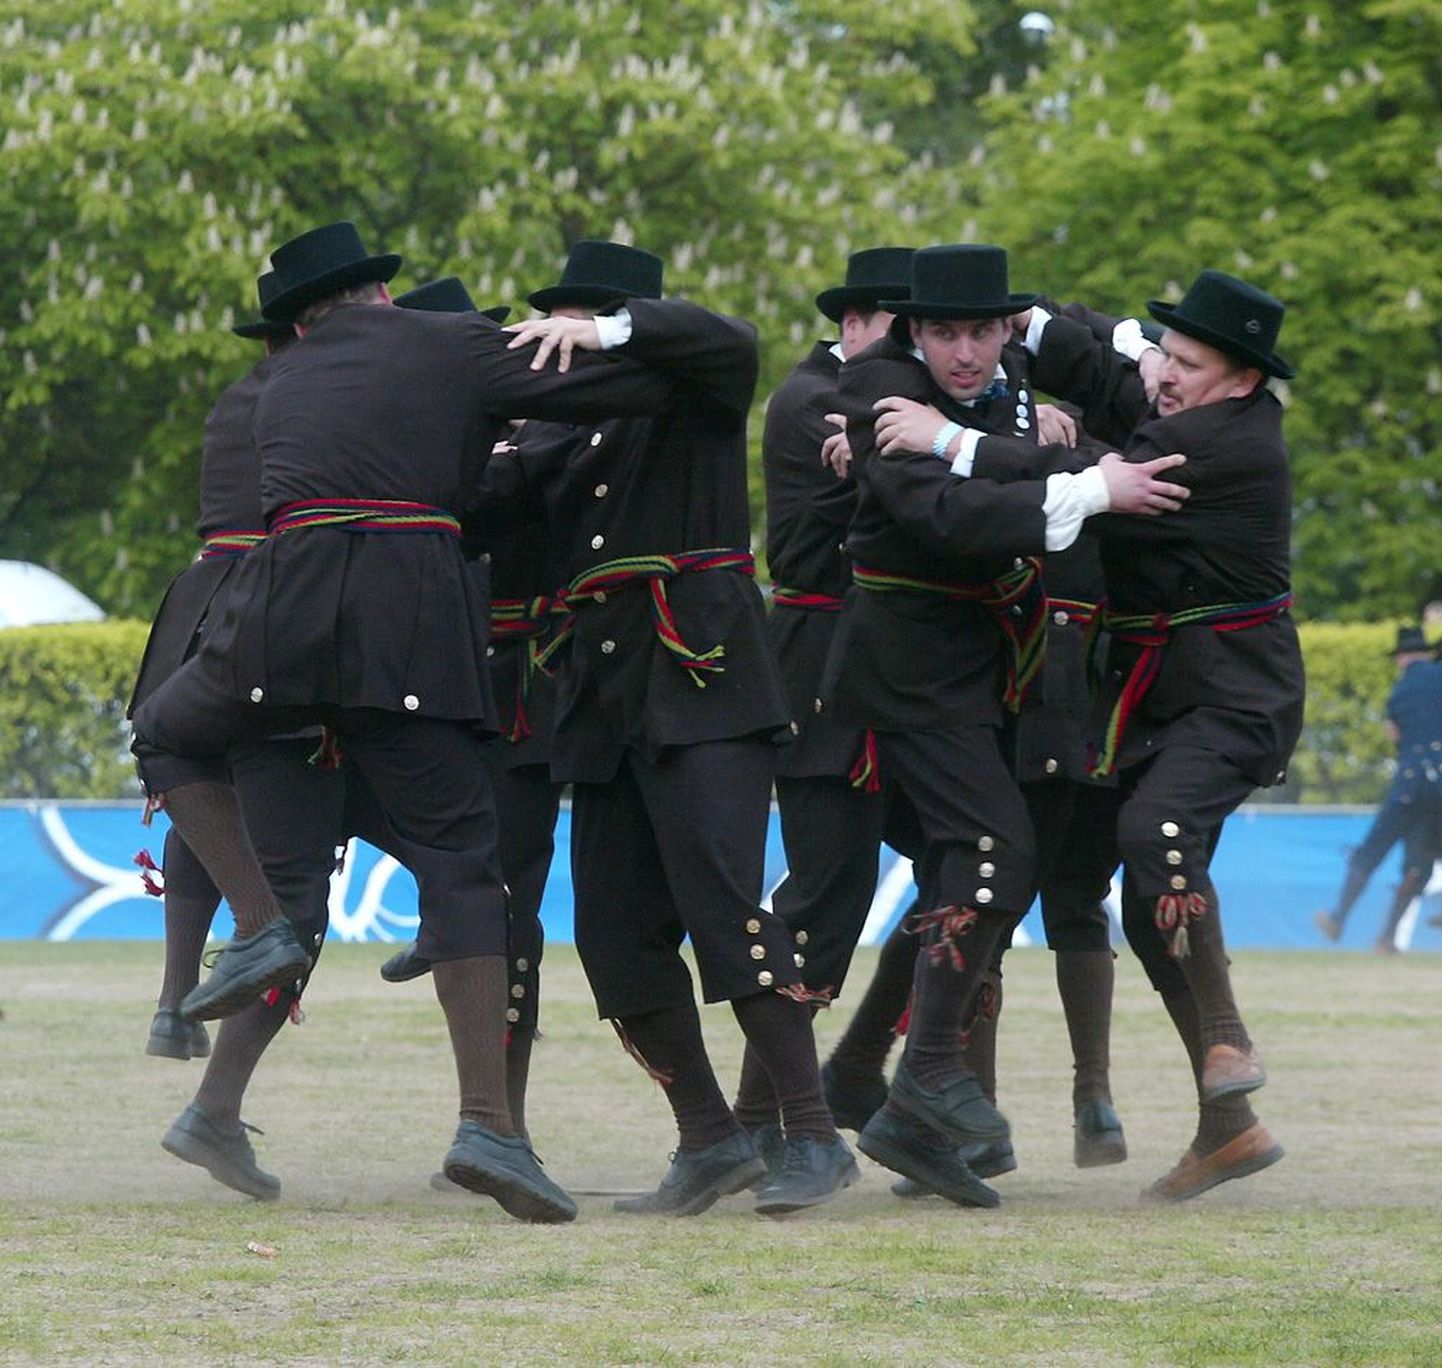 Esimene meeste tantsupidu peeti Rakveres 2006. aastal.